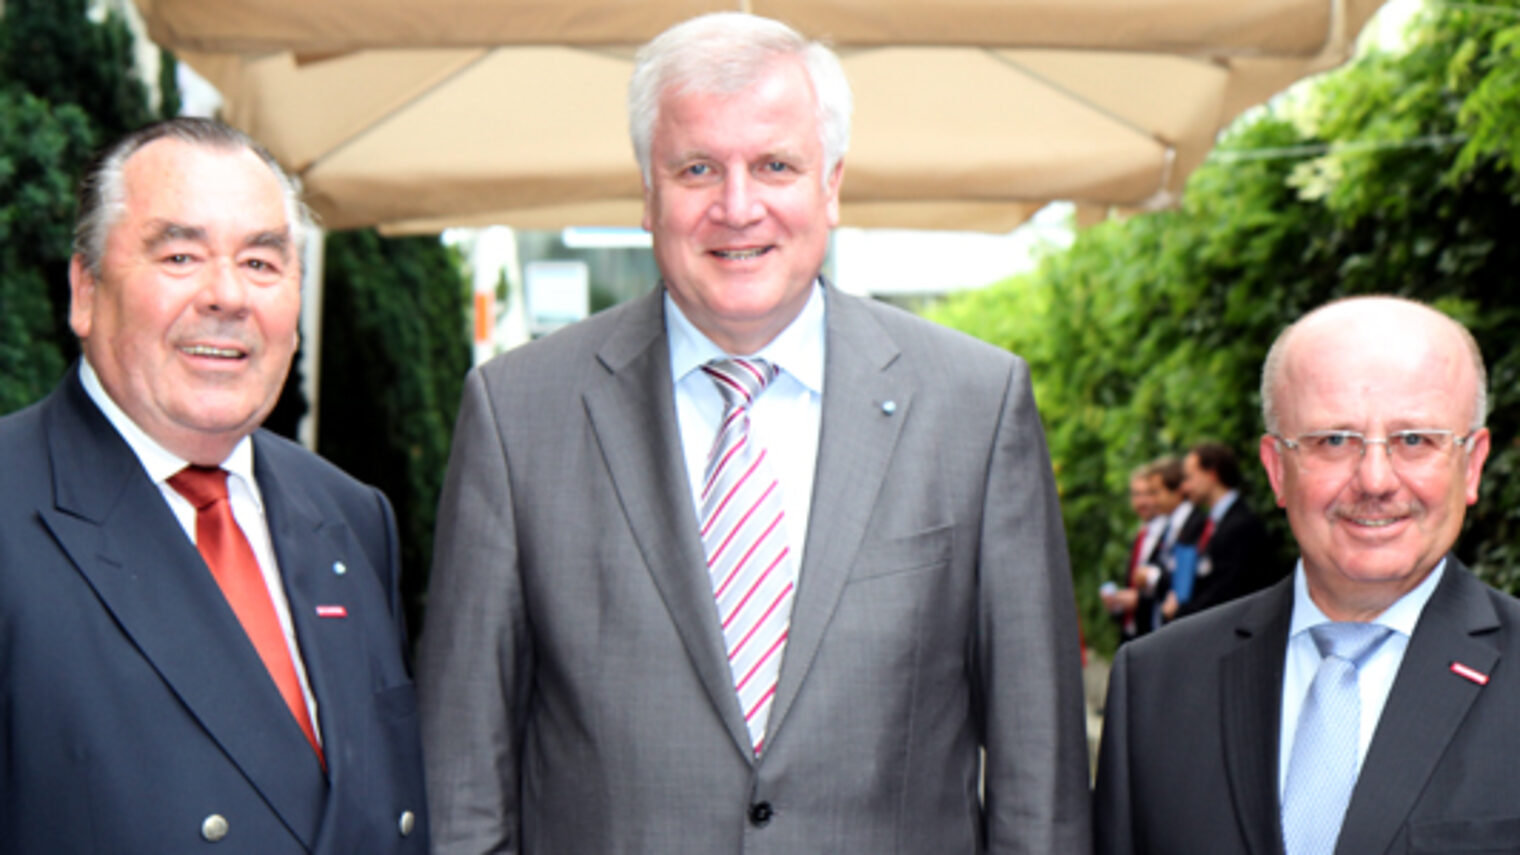 Als Gastredner beim Sommerempfang der Handwerkskammer konnten Präsident Heinrich Traublinger, MdL a. D. (links) und Hauptgeschäftsführer Dr. Lothar Semper (rechts) Bayerns Ministerpräsident Horst Seehofer begrüßen